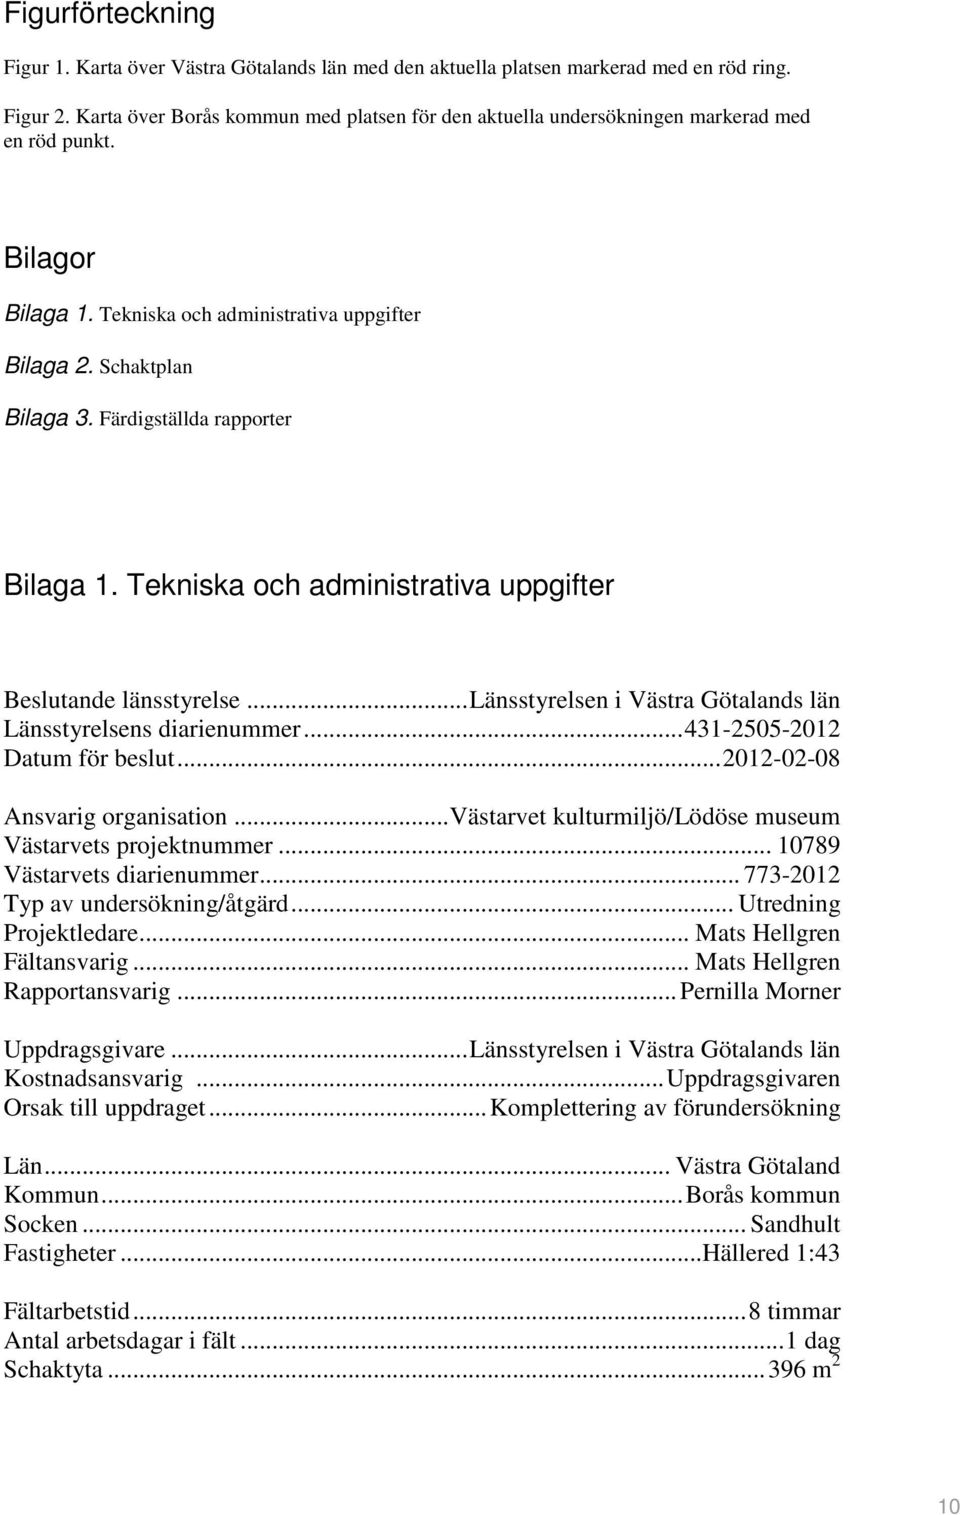 Färdigställda rapporter Bilaga 1. Tekniska och administrativa uppgifter Beslutande länsstyrelse...länsstyrelsen i Västra Götalands län Länsstyrelsens diarienummer...431-2505-2012 Datum för beslut.